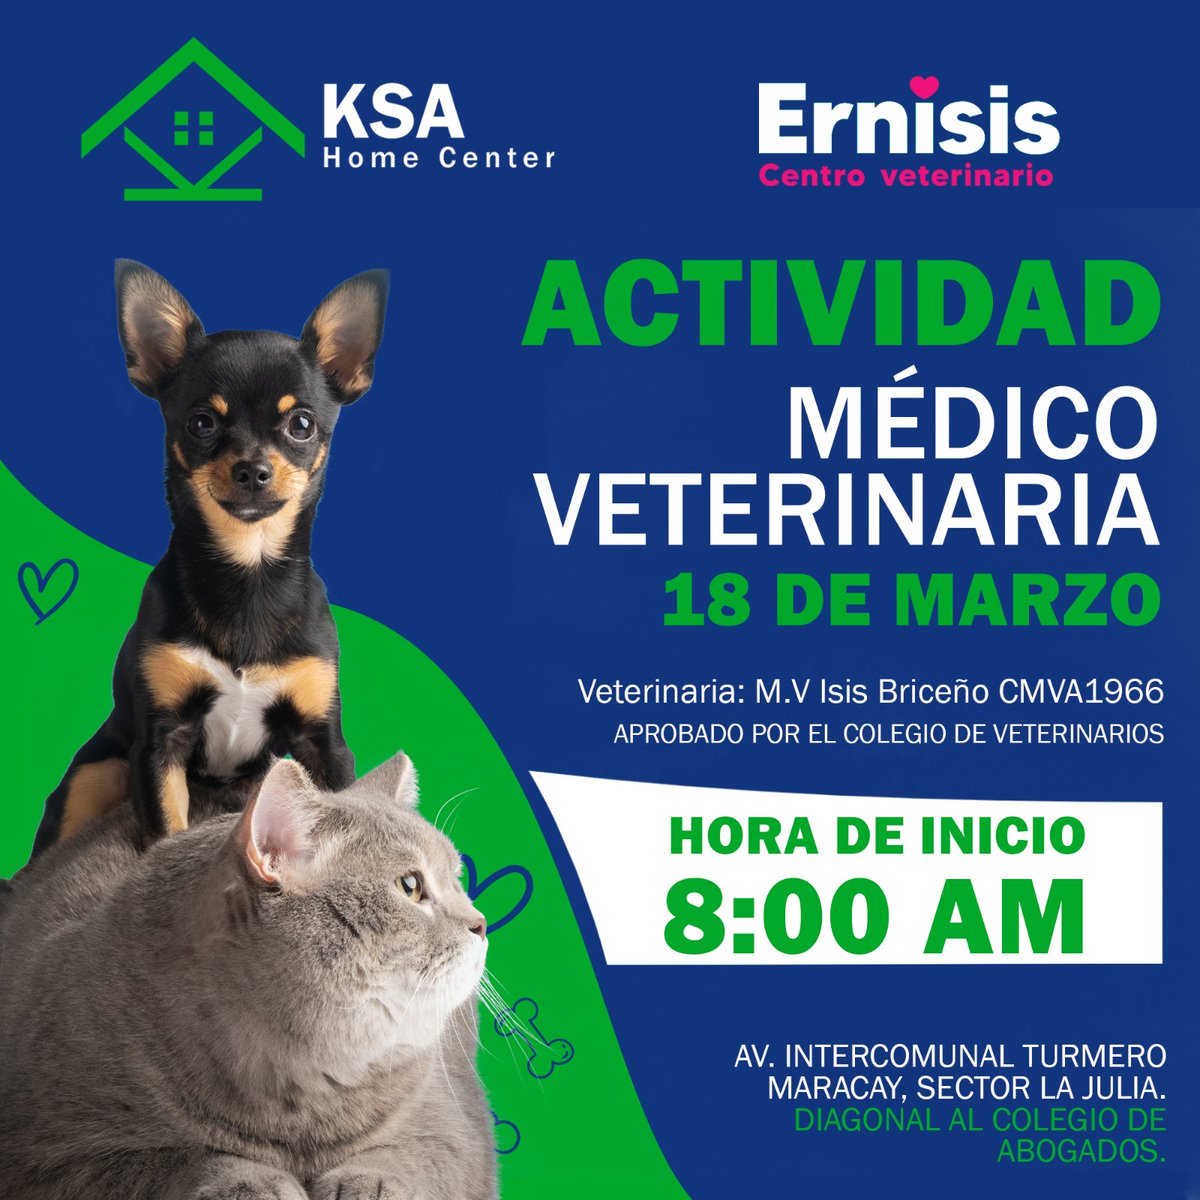 En KSA Home Center cuidamos de tus mascotas💚
Es por eso que tendremos una actividad médico veterinaria para los consentidos de la casa.
Este 18 de marzo a partir de las 8:00am.
¡Visítanos!✨
#Turmero #Maracay #Ernisis
#Jornadadevacunacion #vacunacion #Mascotas #BienestarAnimal